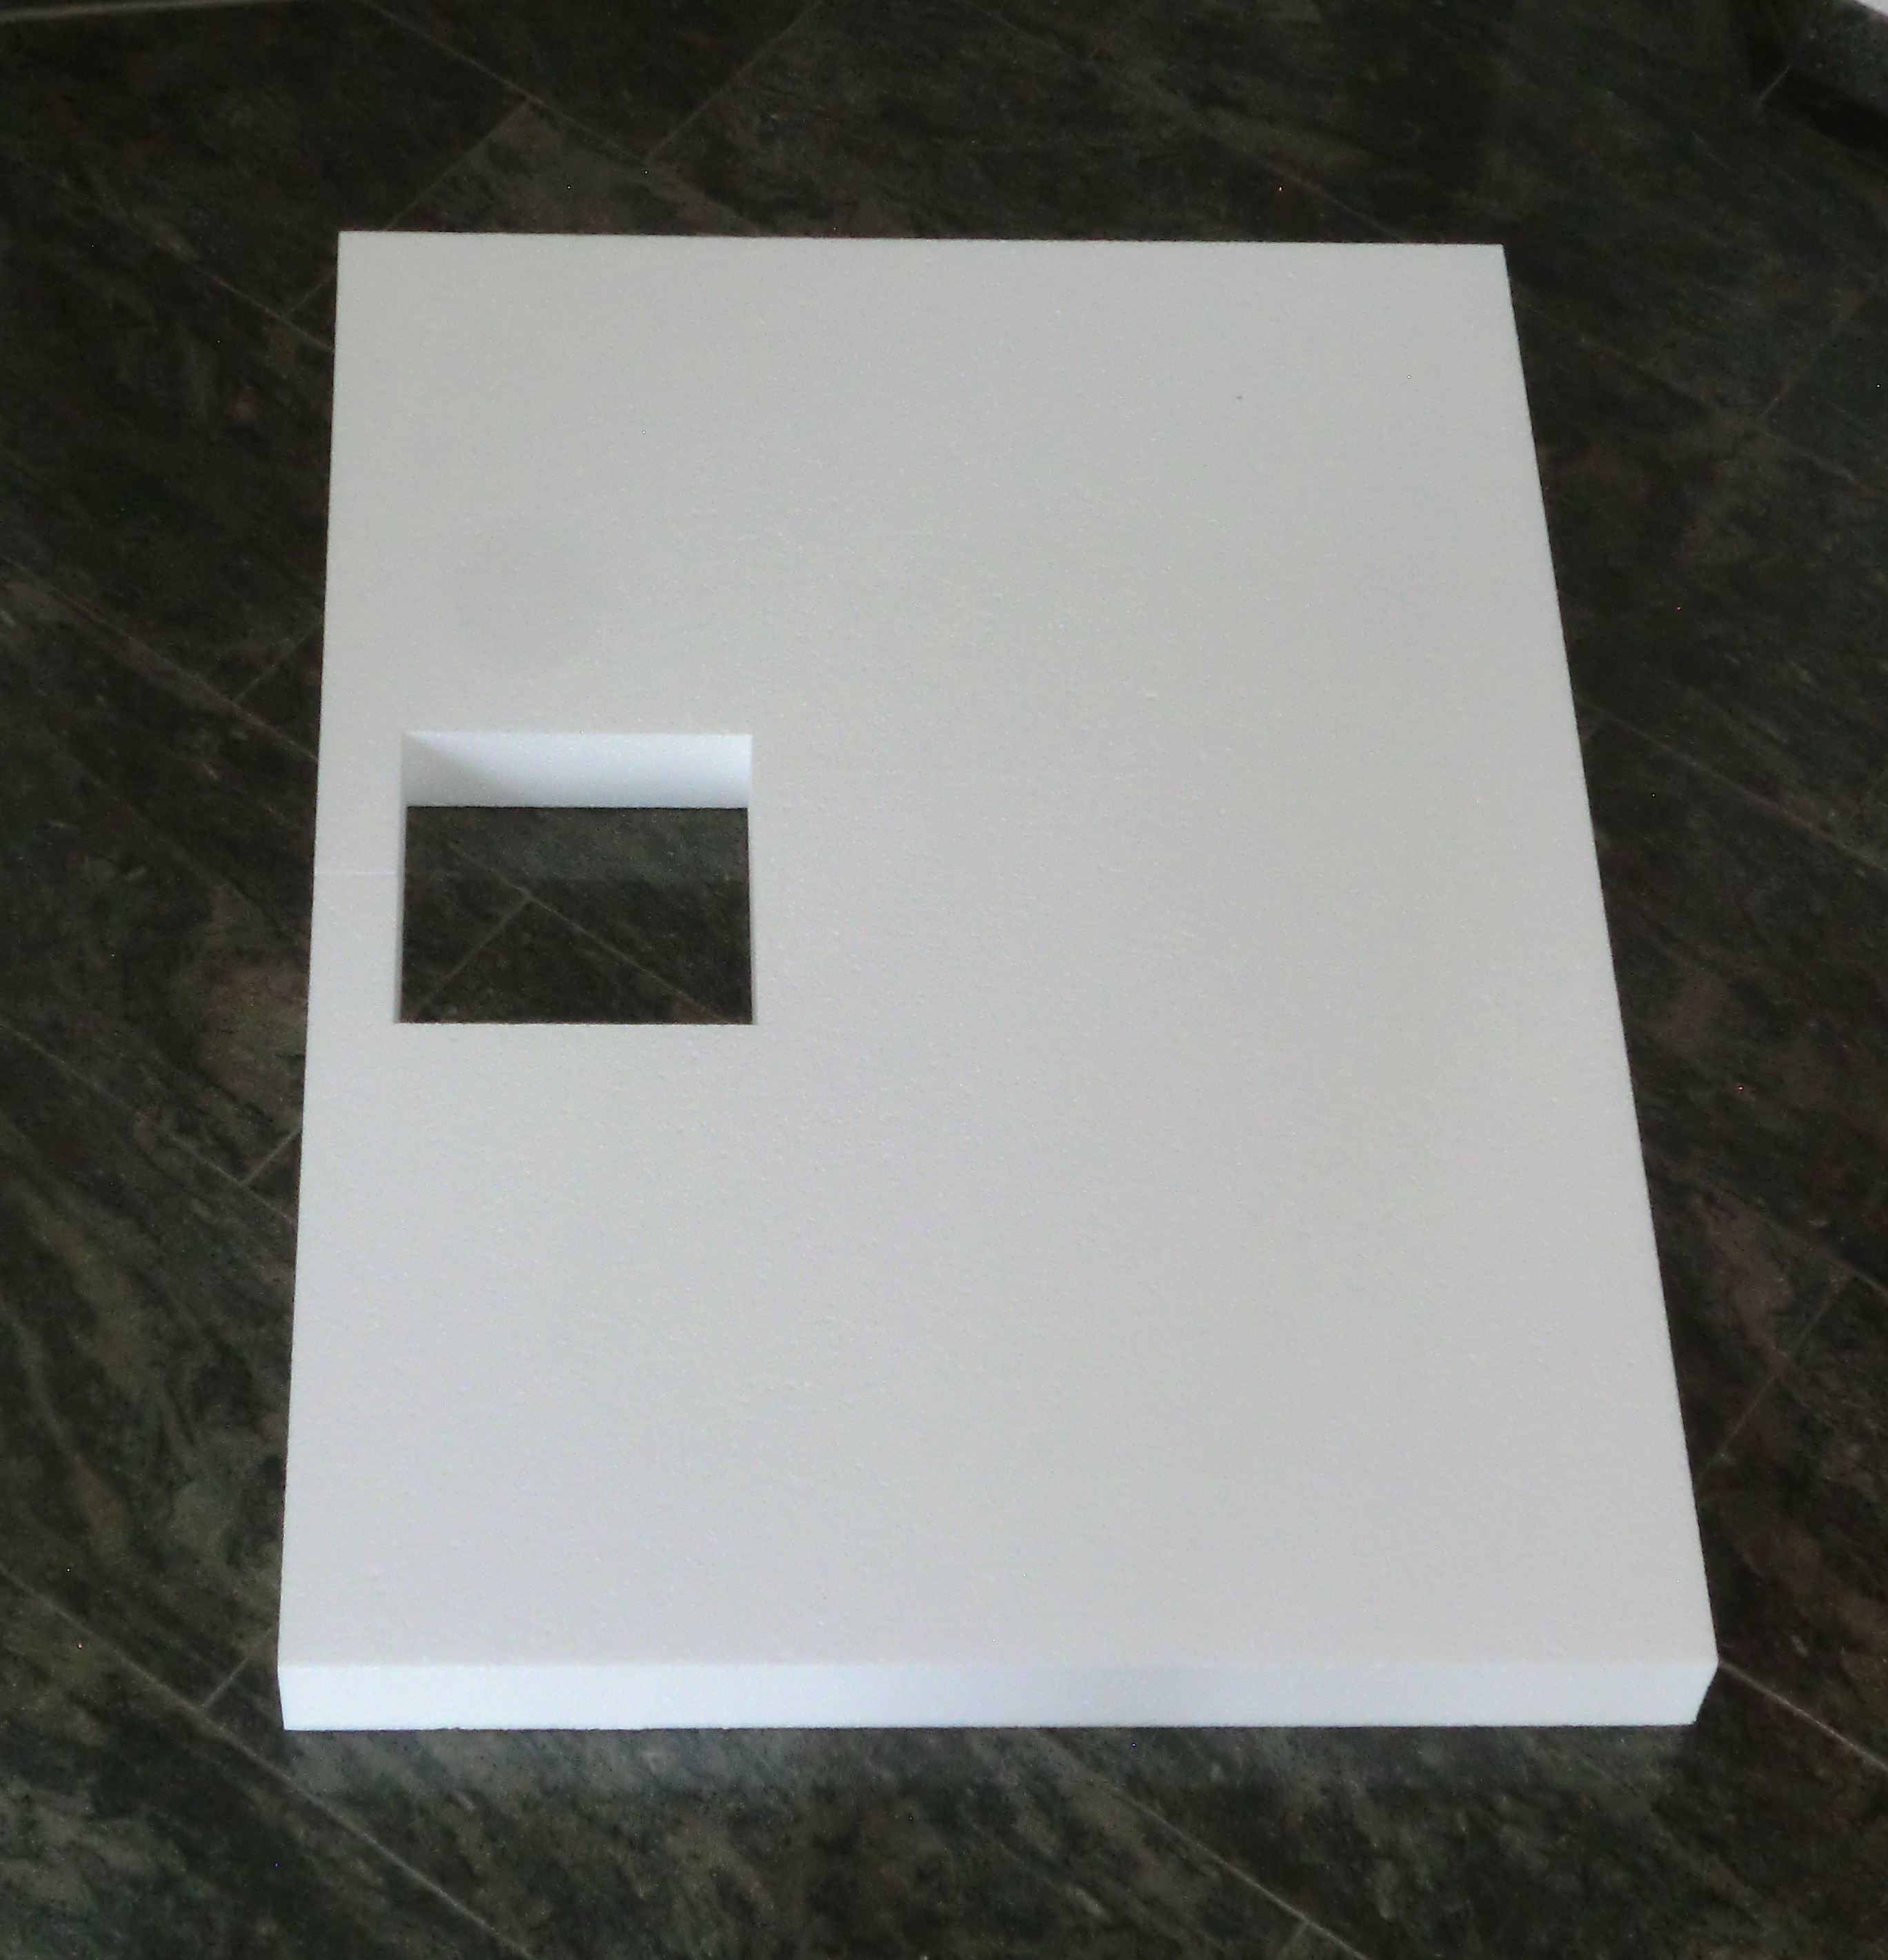 KOMPLETT-PAKET: Duschwanne 120 x 75 cm superflach 3,5 cm weiß mit GERADER STYROPOR-UNTERSEITE Acryl + Styroporträger/Wannenträger + Ablaufgarnitur chrom DN 90  